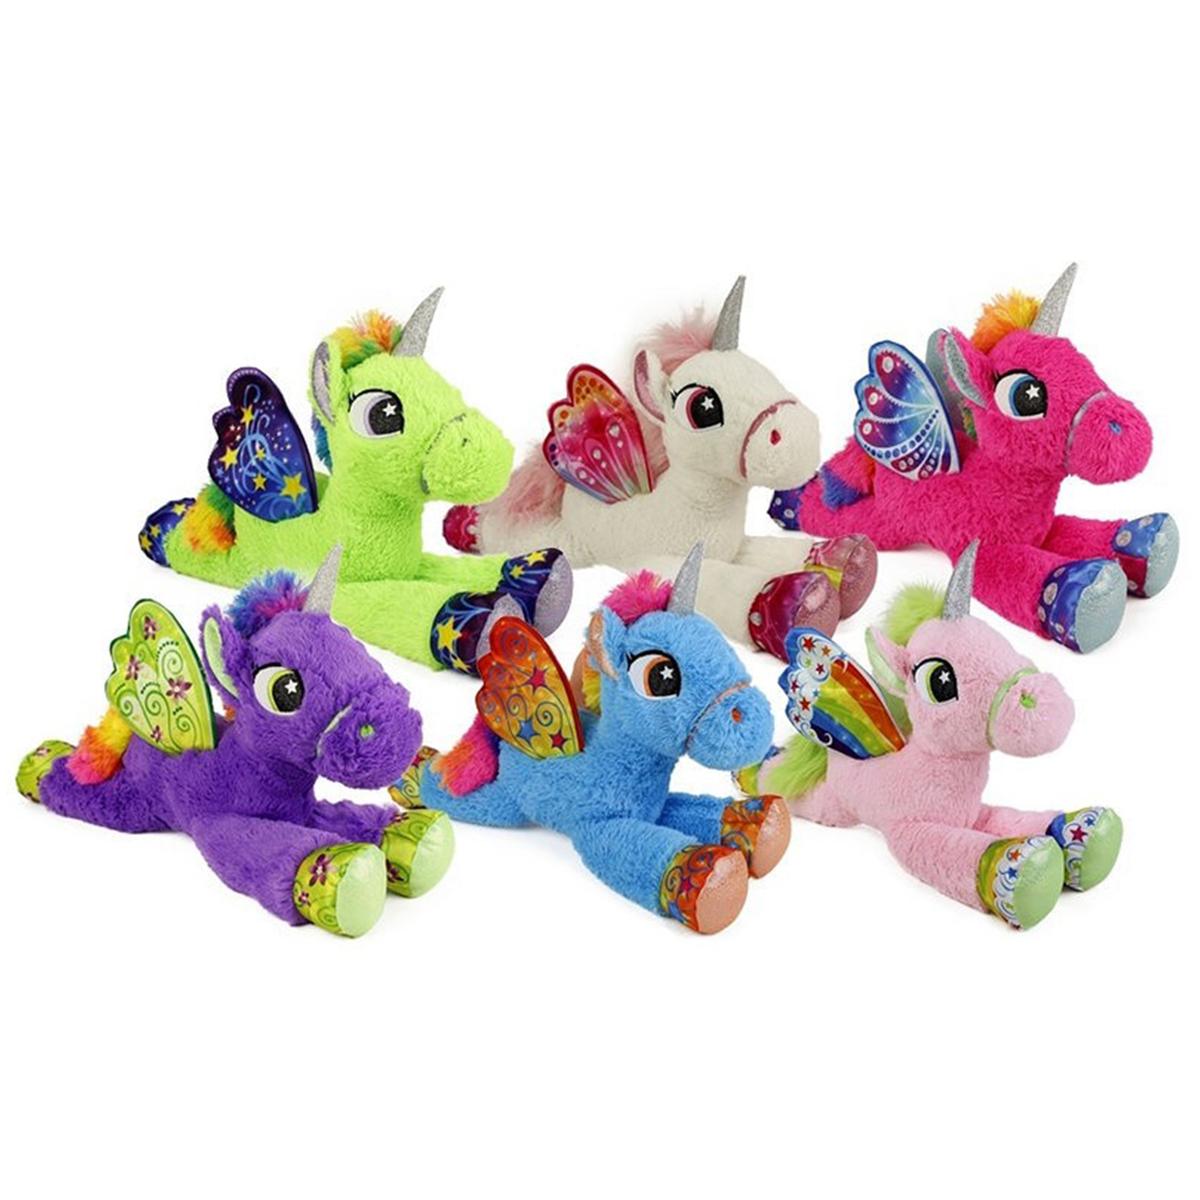 Peluche Unicornio 33 cm (varios colores) | Fantasia | Toys"R"Us España